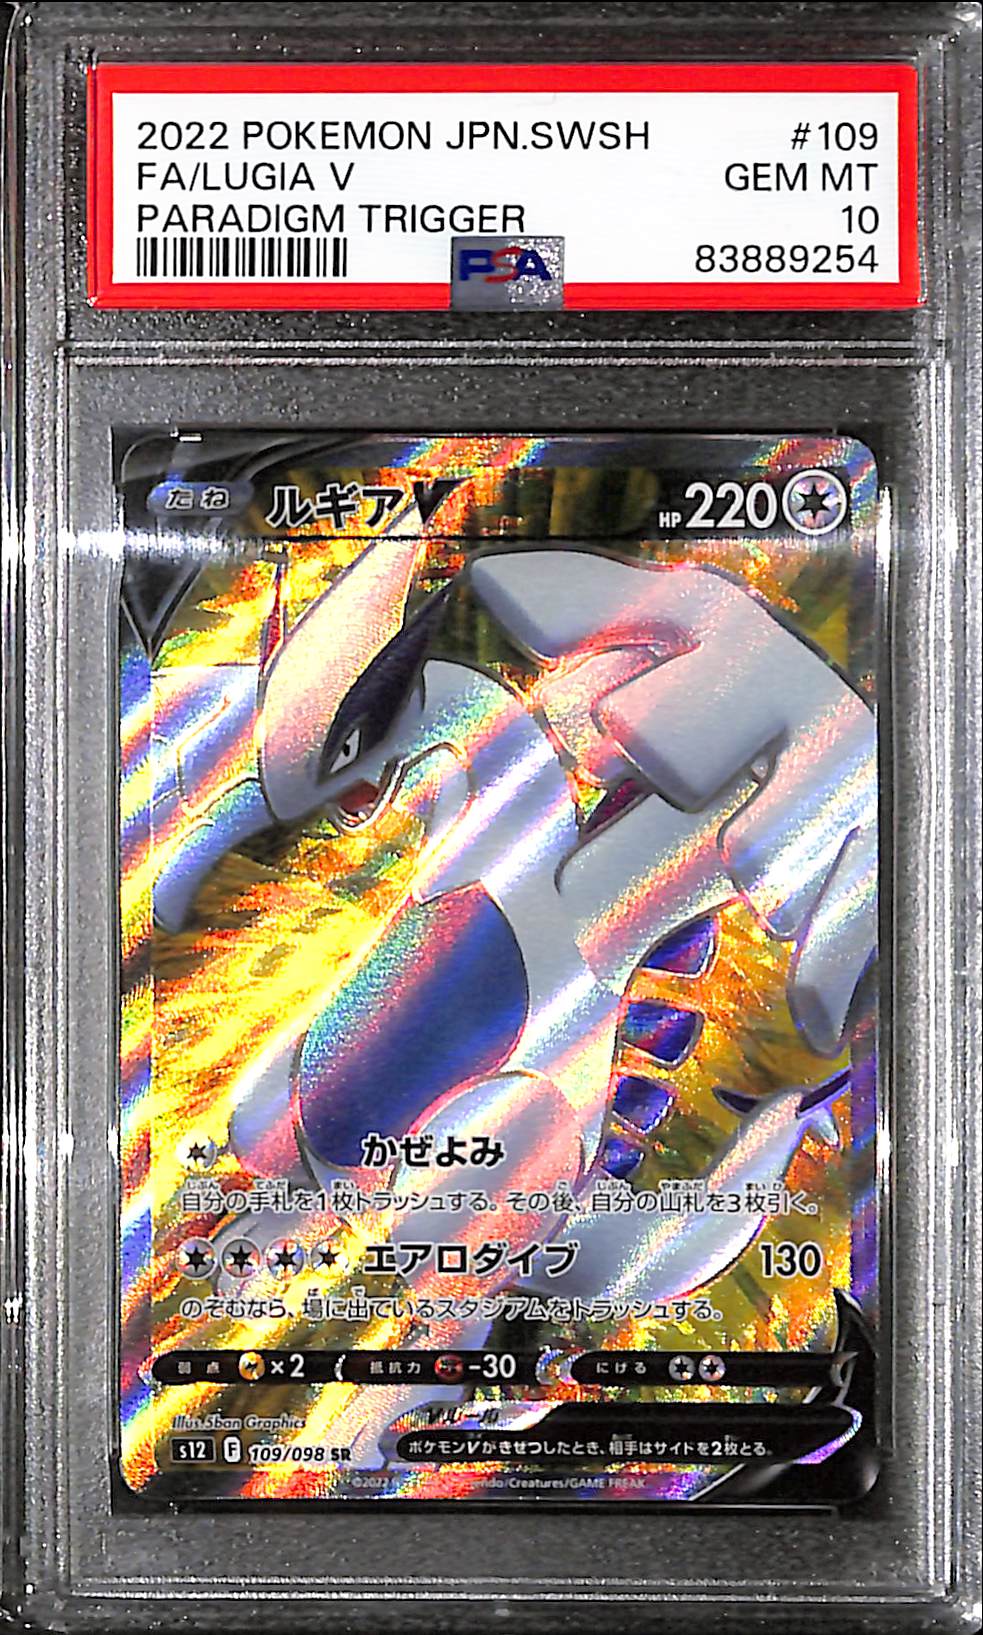 PSA10 - 2022 Pokemon Japanese - FA Lugia V 109/098 - Paradigm Trigger - TCGroupAU